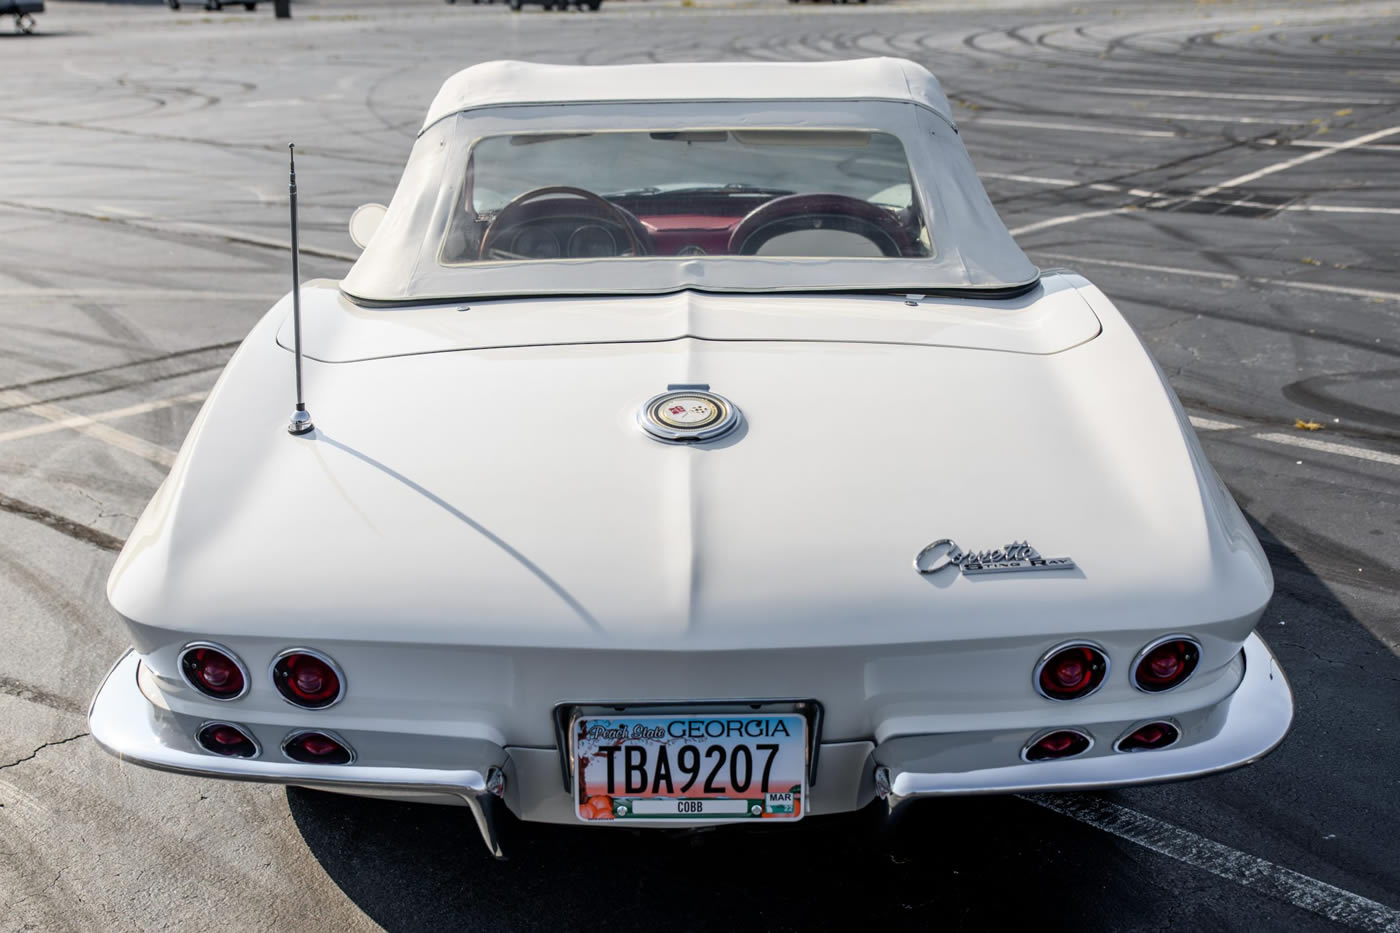 1965 Corvette Convertible 396/425 in Ermine White